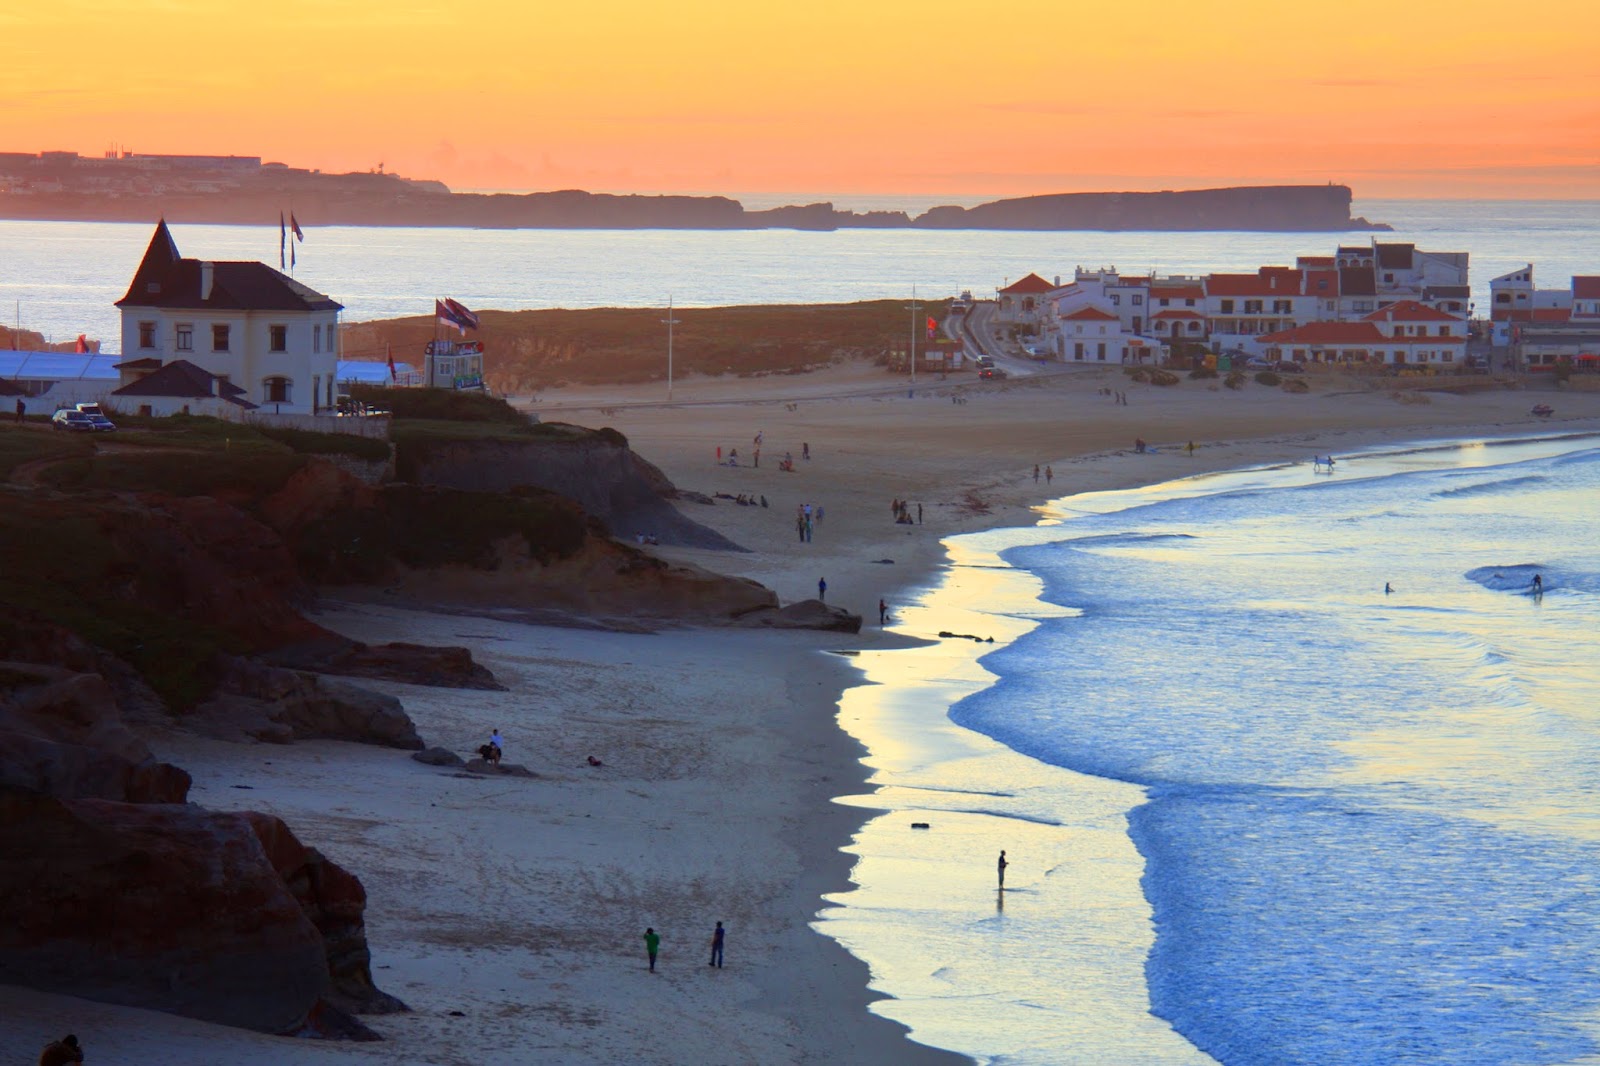 O magnífico destino de férias no Baleal - Da Pequena Baleia eu vejo o Baleal | Portugal